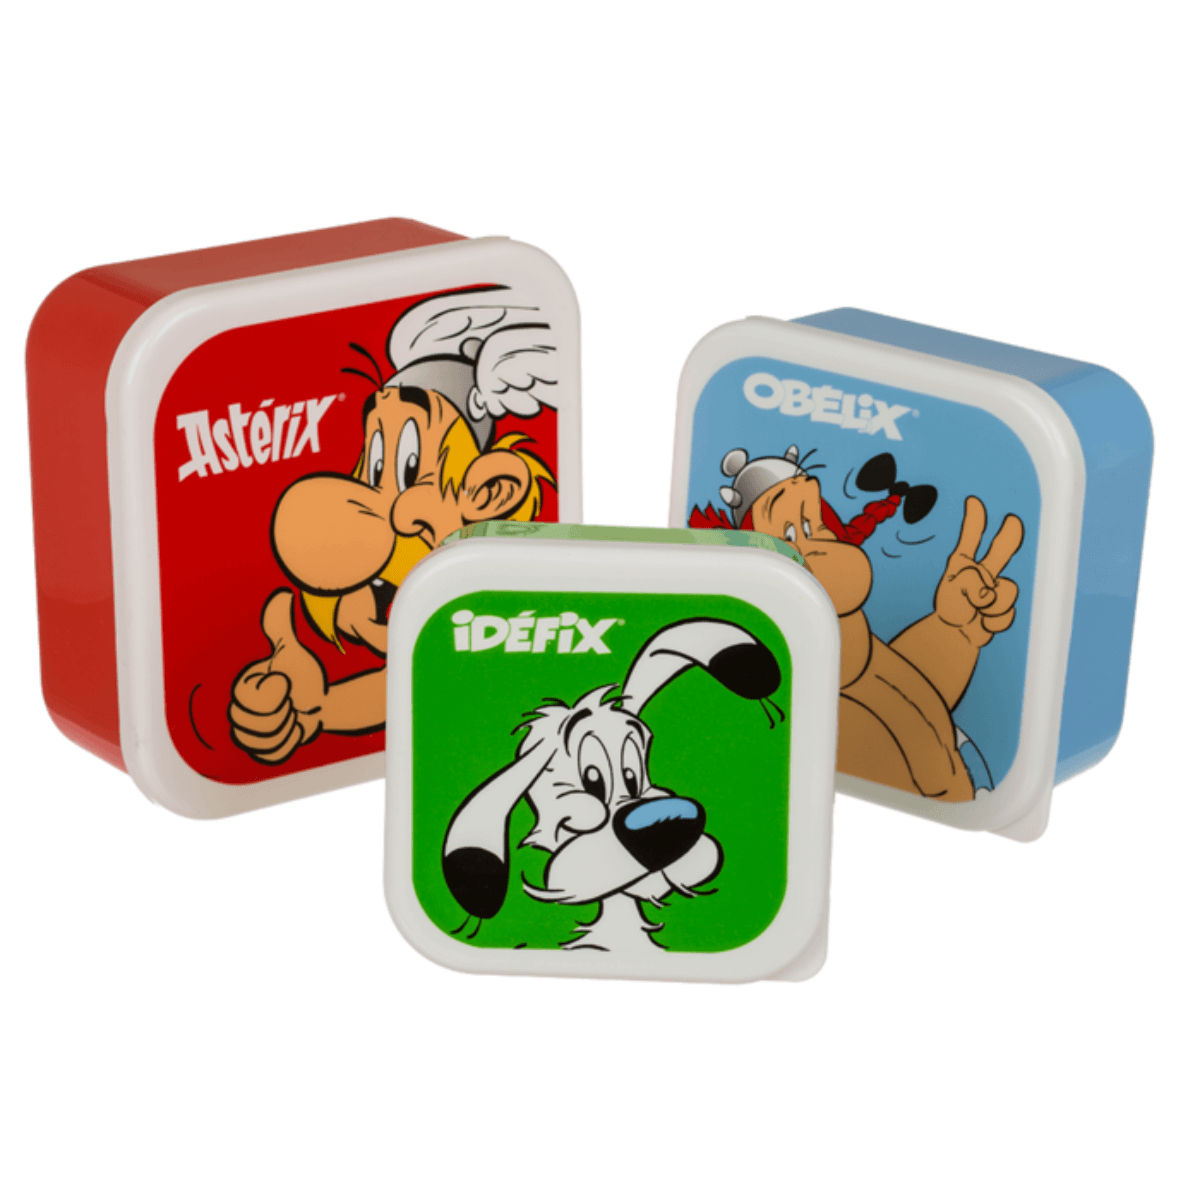 3-pack lunsjbokser- Asterix, Obelix og Idefix